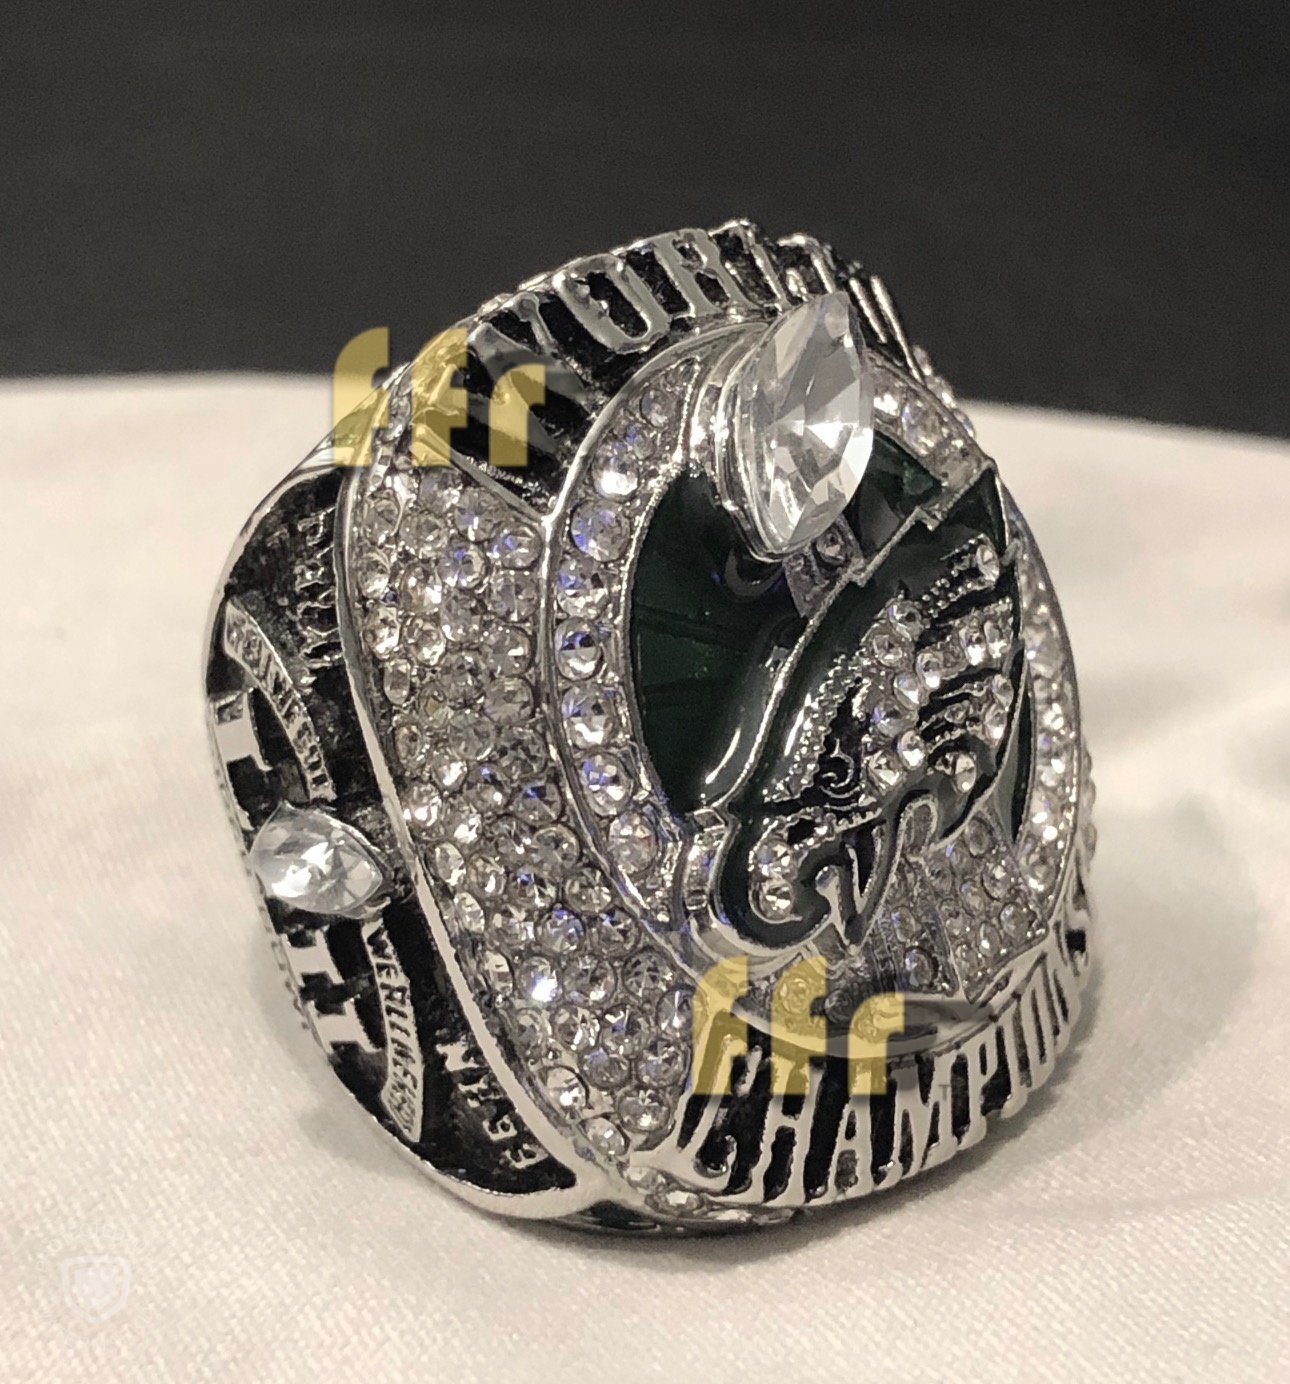 Shop Eagles Super Bowl Ring For Sale